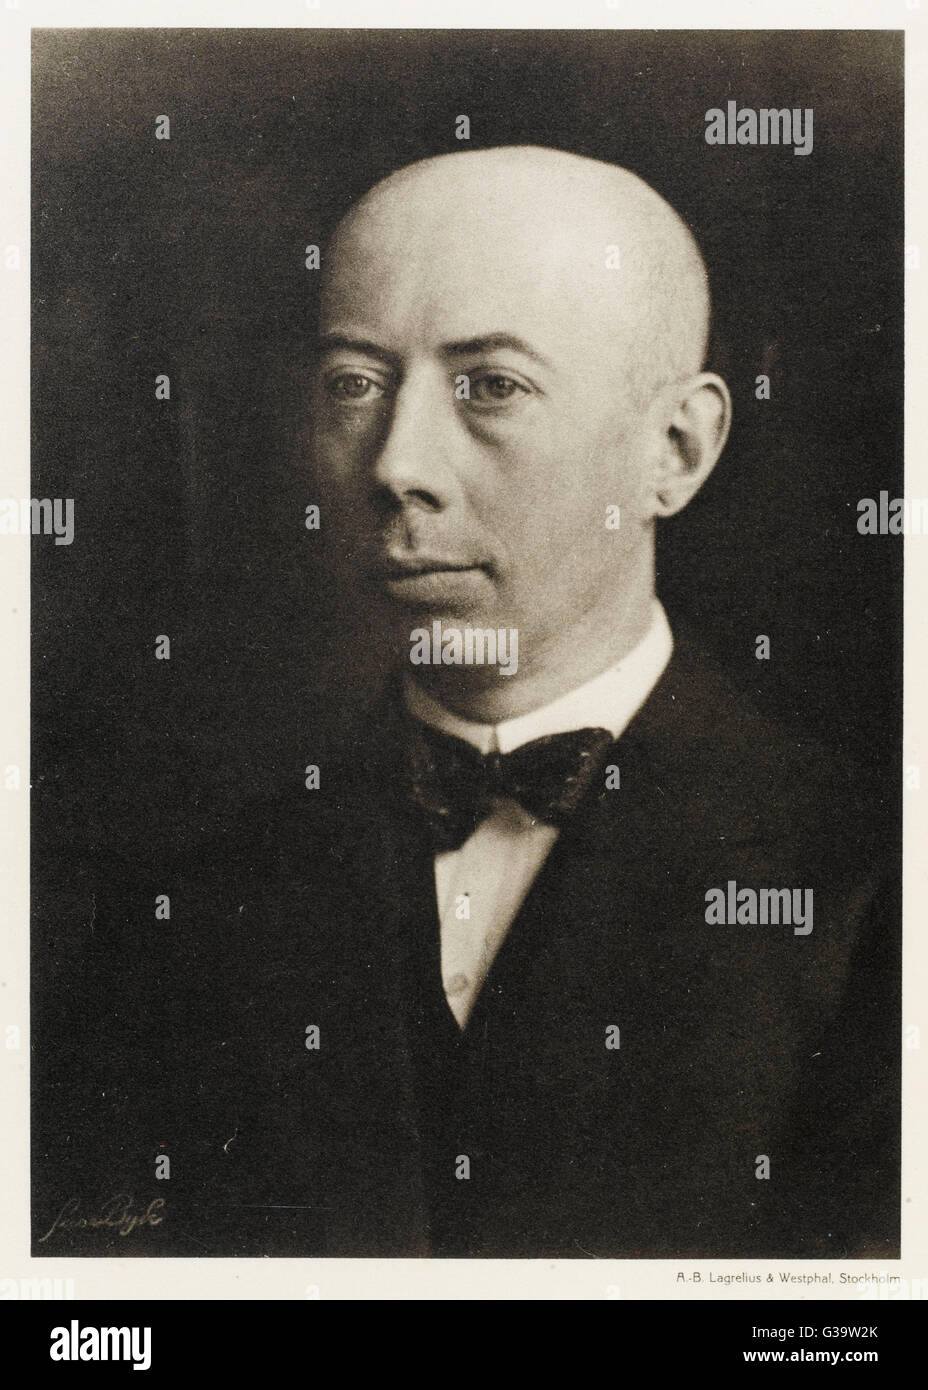 GUSTAV HERTZ  German physicist        Date: 1887 - 1975 Stock Photo